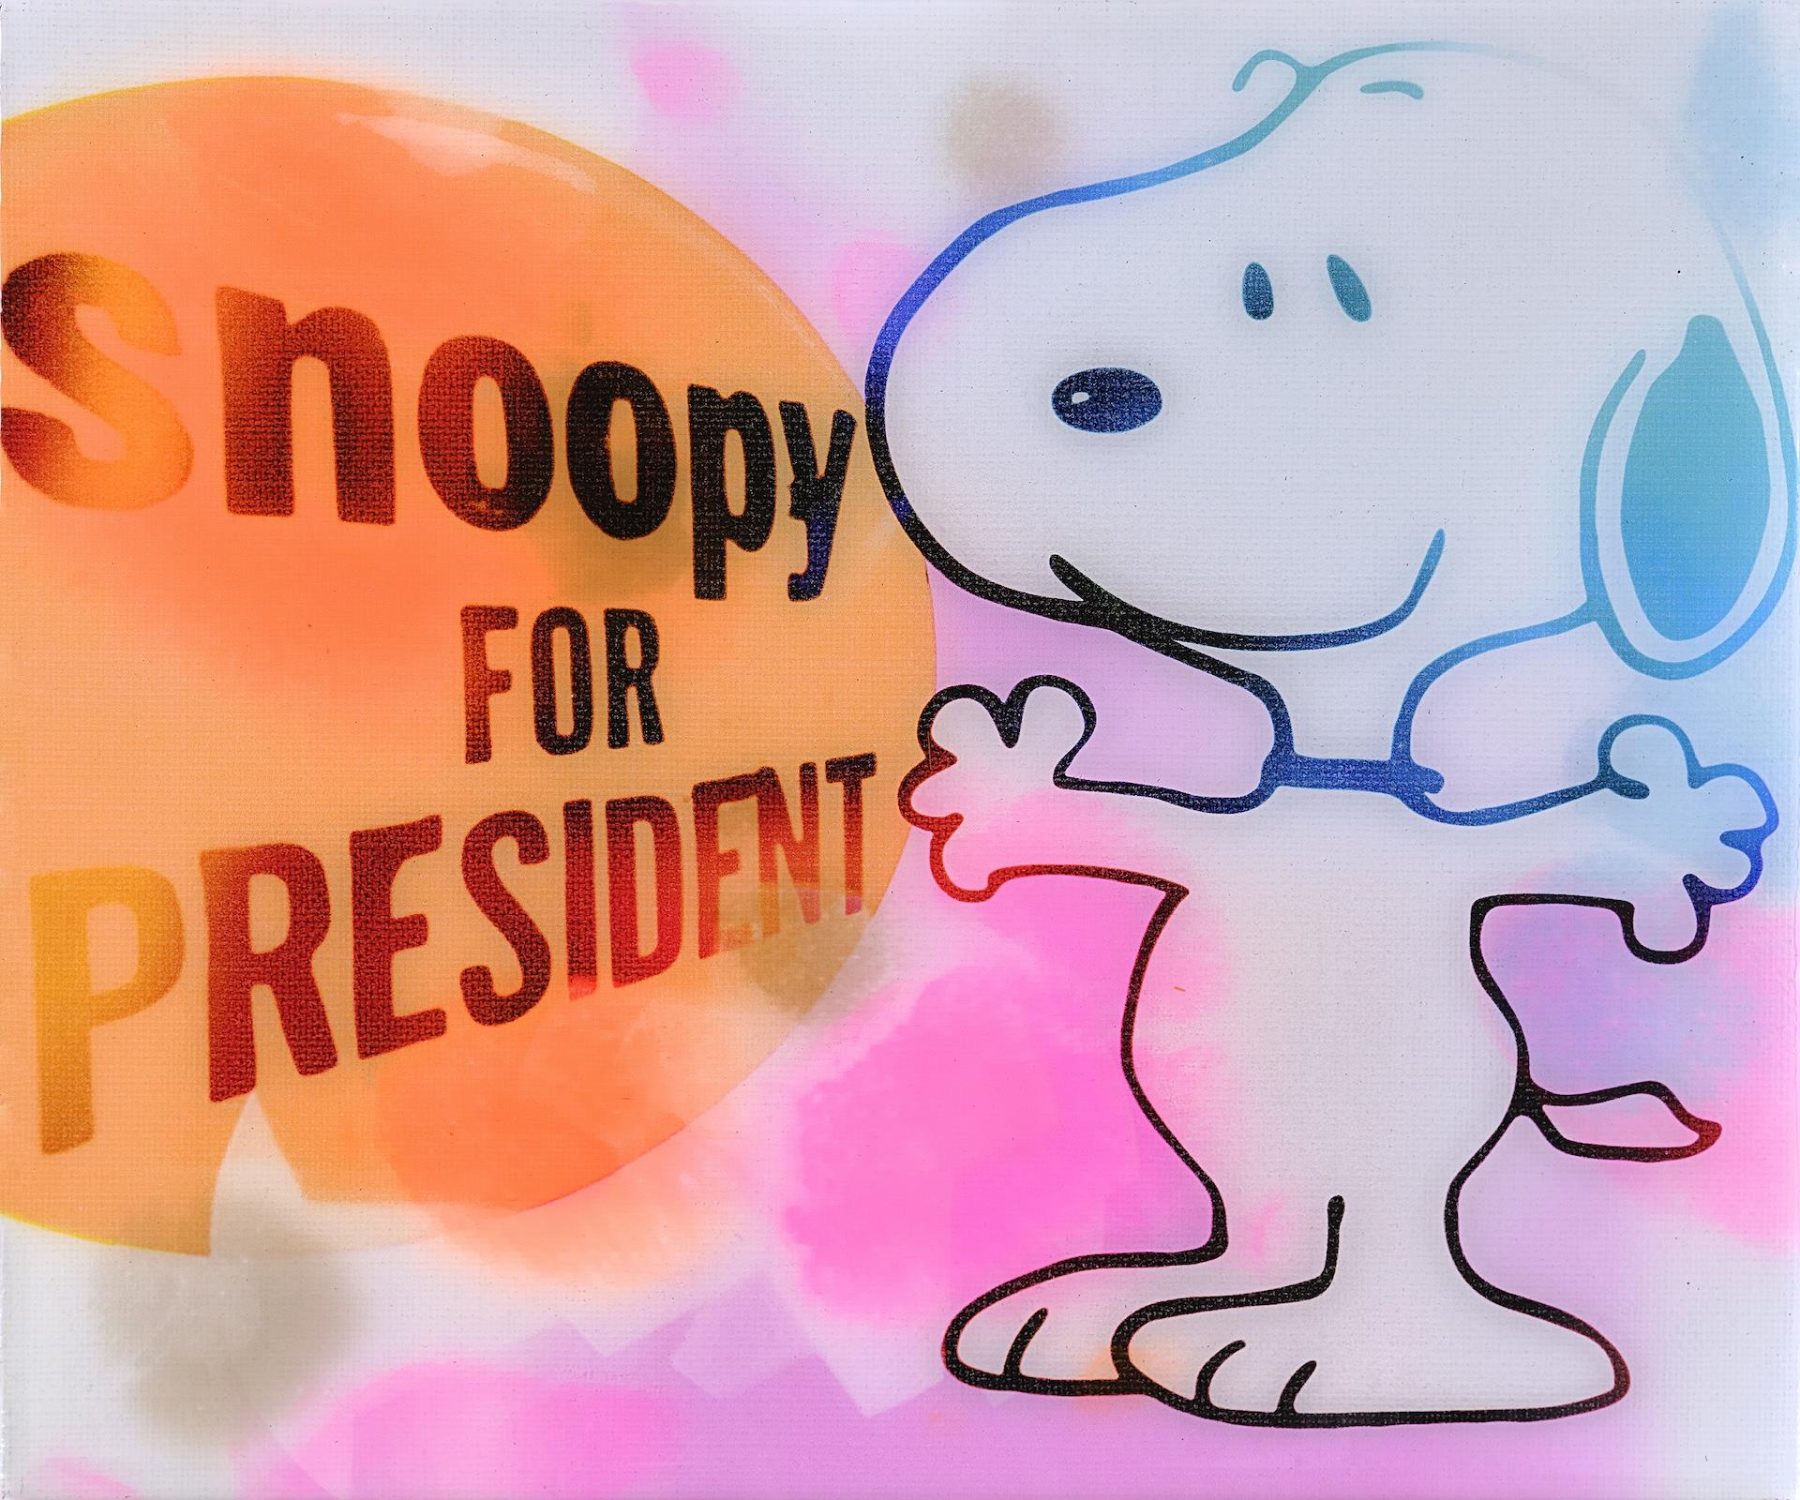 Snoopy for President - Döring, Jörg - k-DCLT23189-18